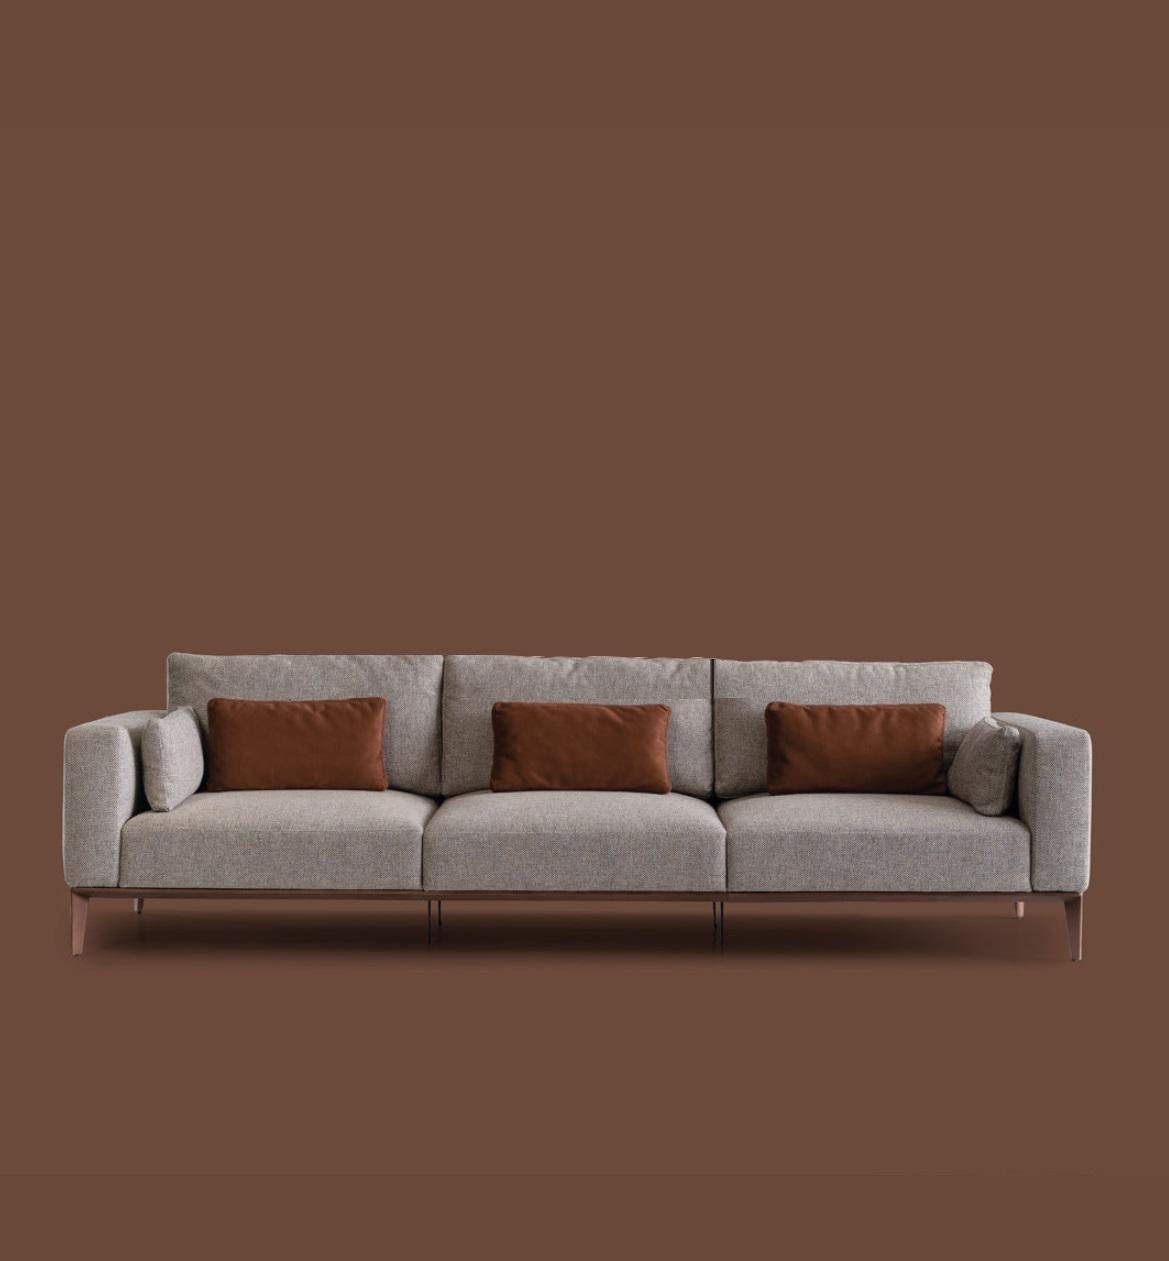 JVmoebel Sofa, Sofagarnitur Couch Möbel Set Garnitur Couchen Einrichtung Polster